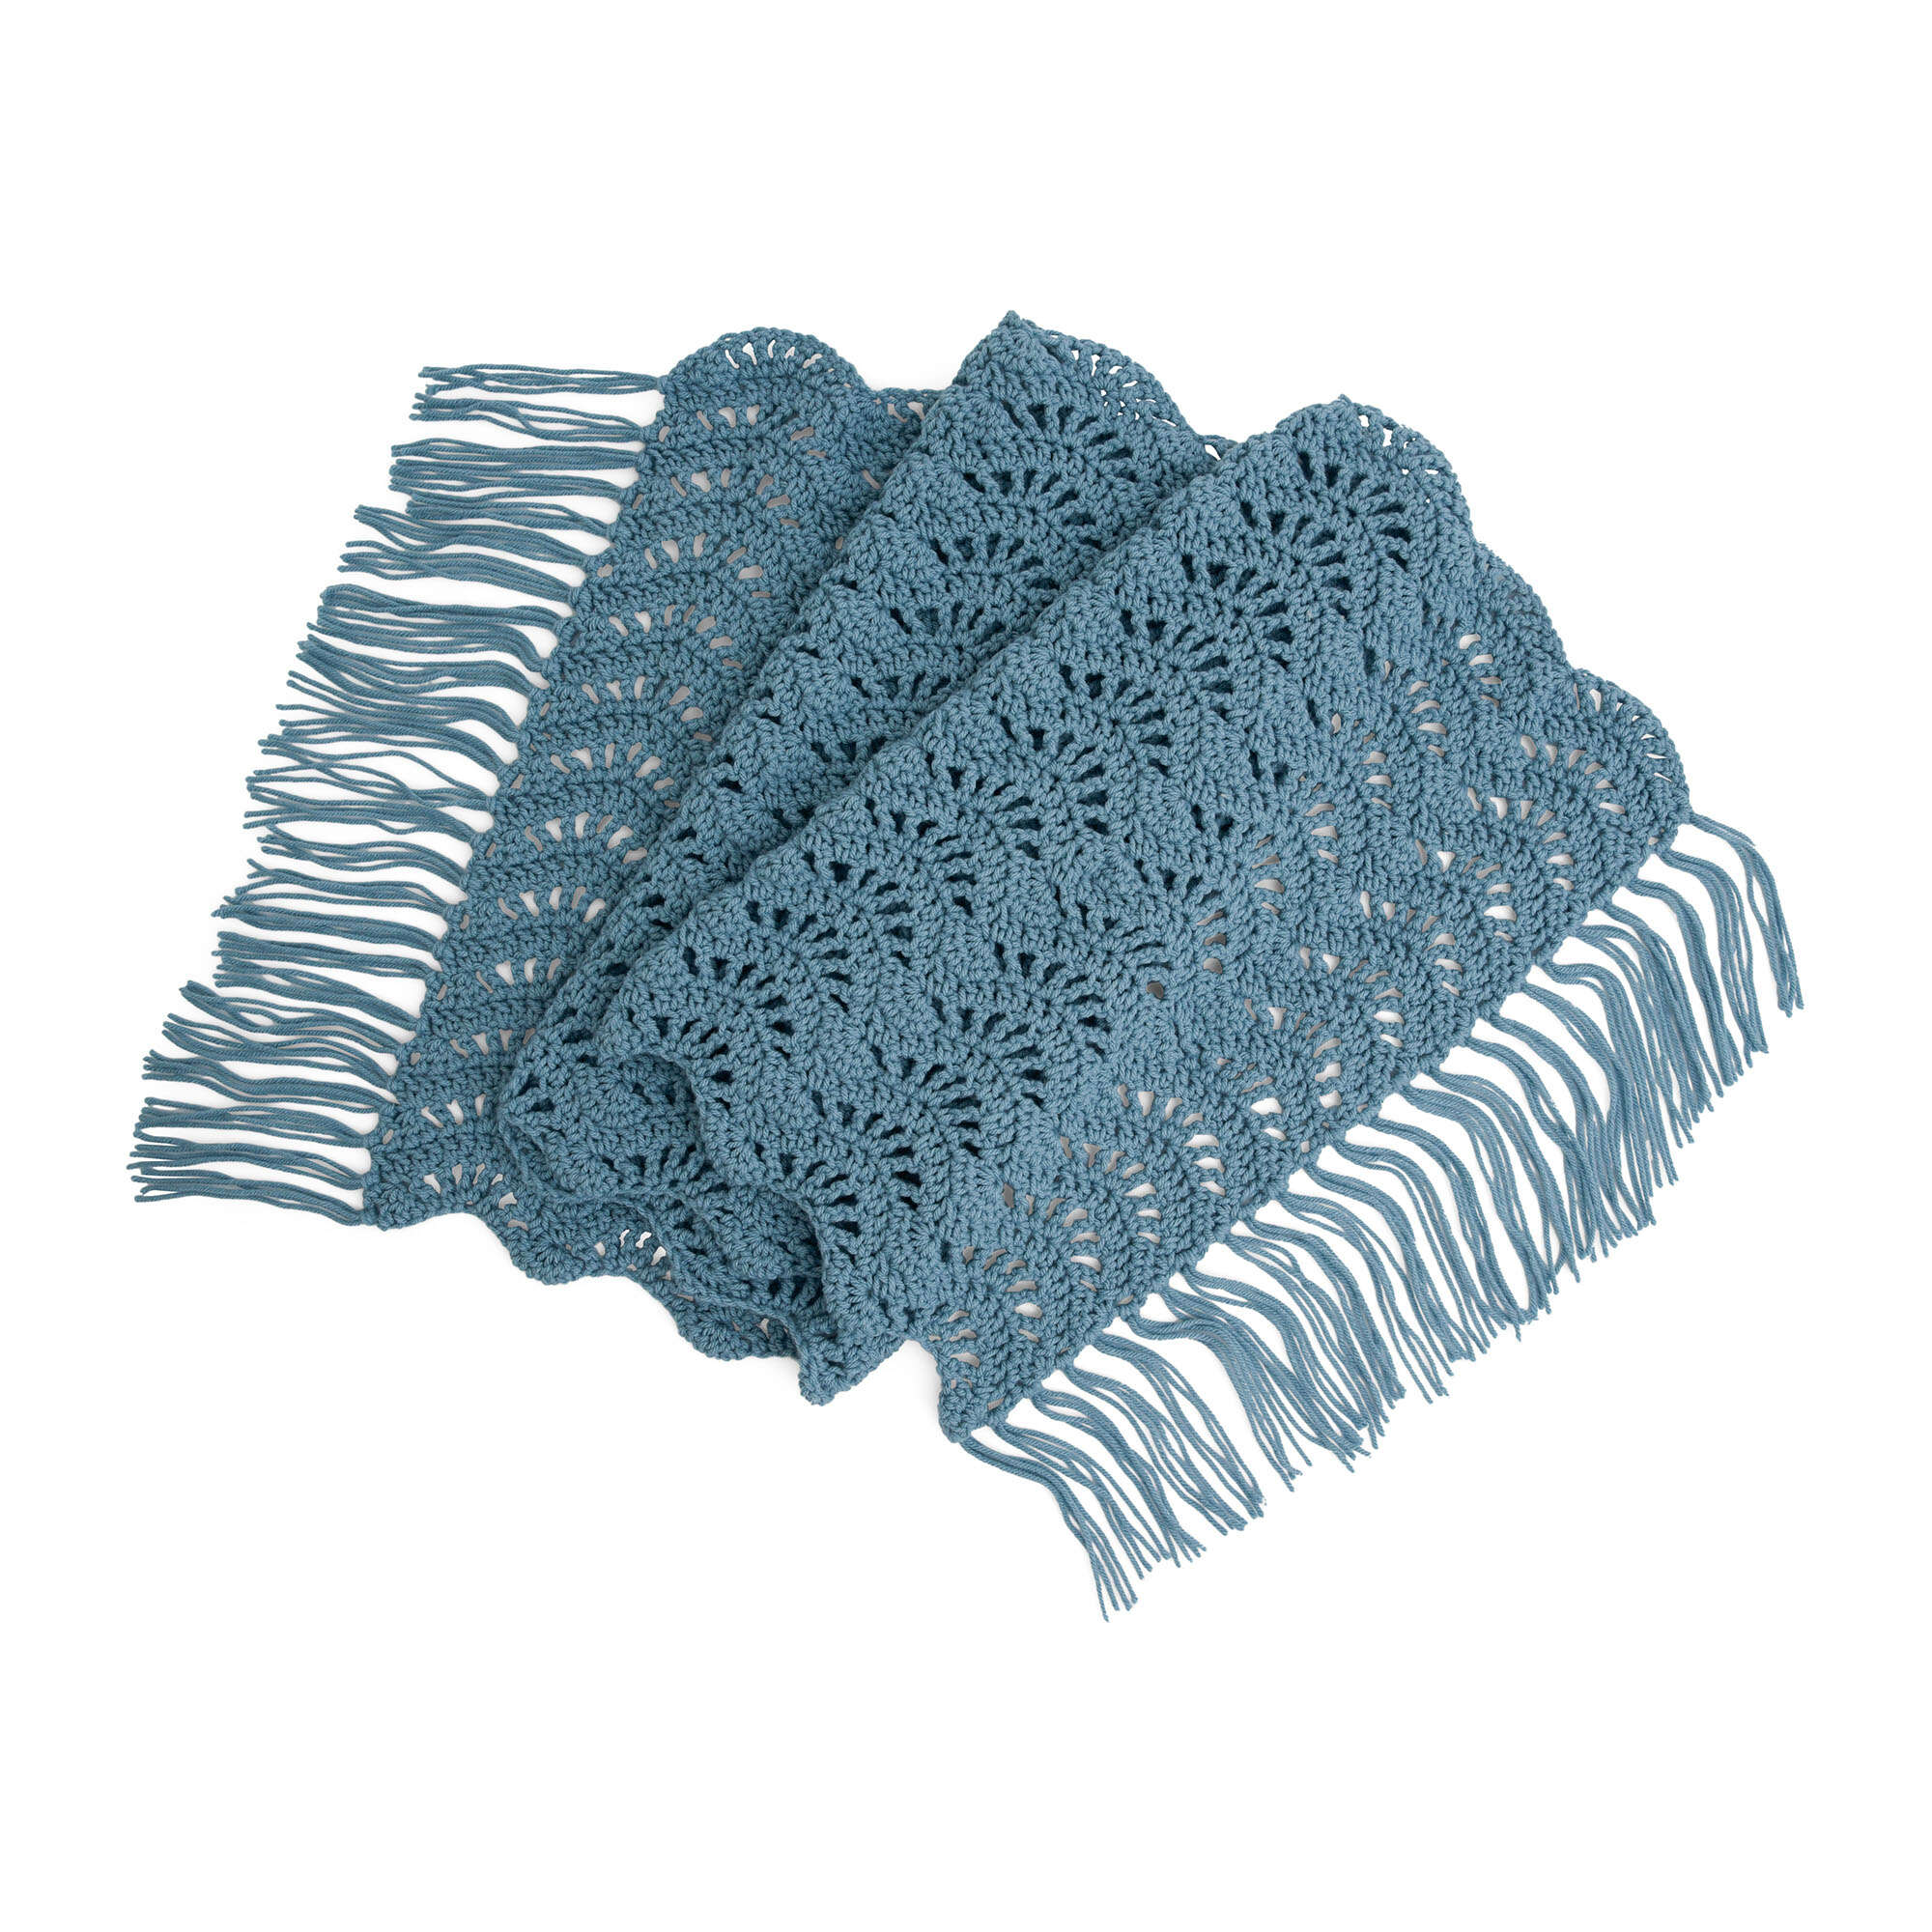 1 ROLL CROCHET Yarn Soft DIY Craft Yarn Knitting Line for Knitting Scarf  Sweater $9.59 - PicClick AU